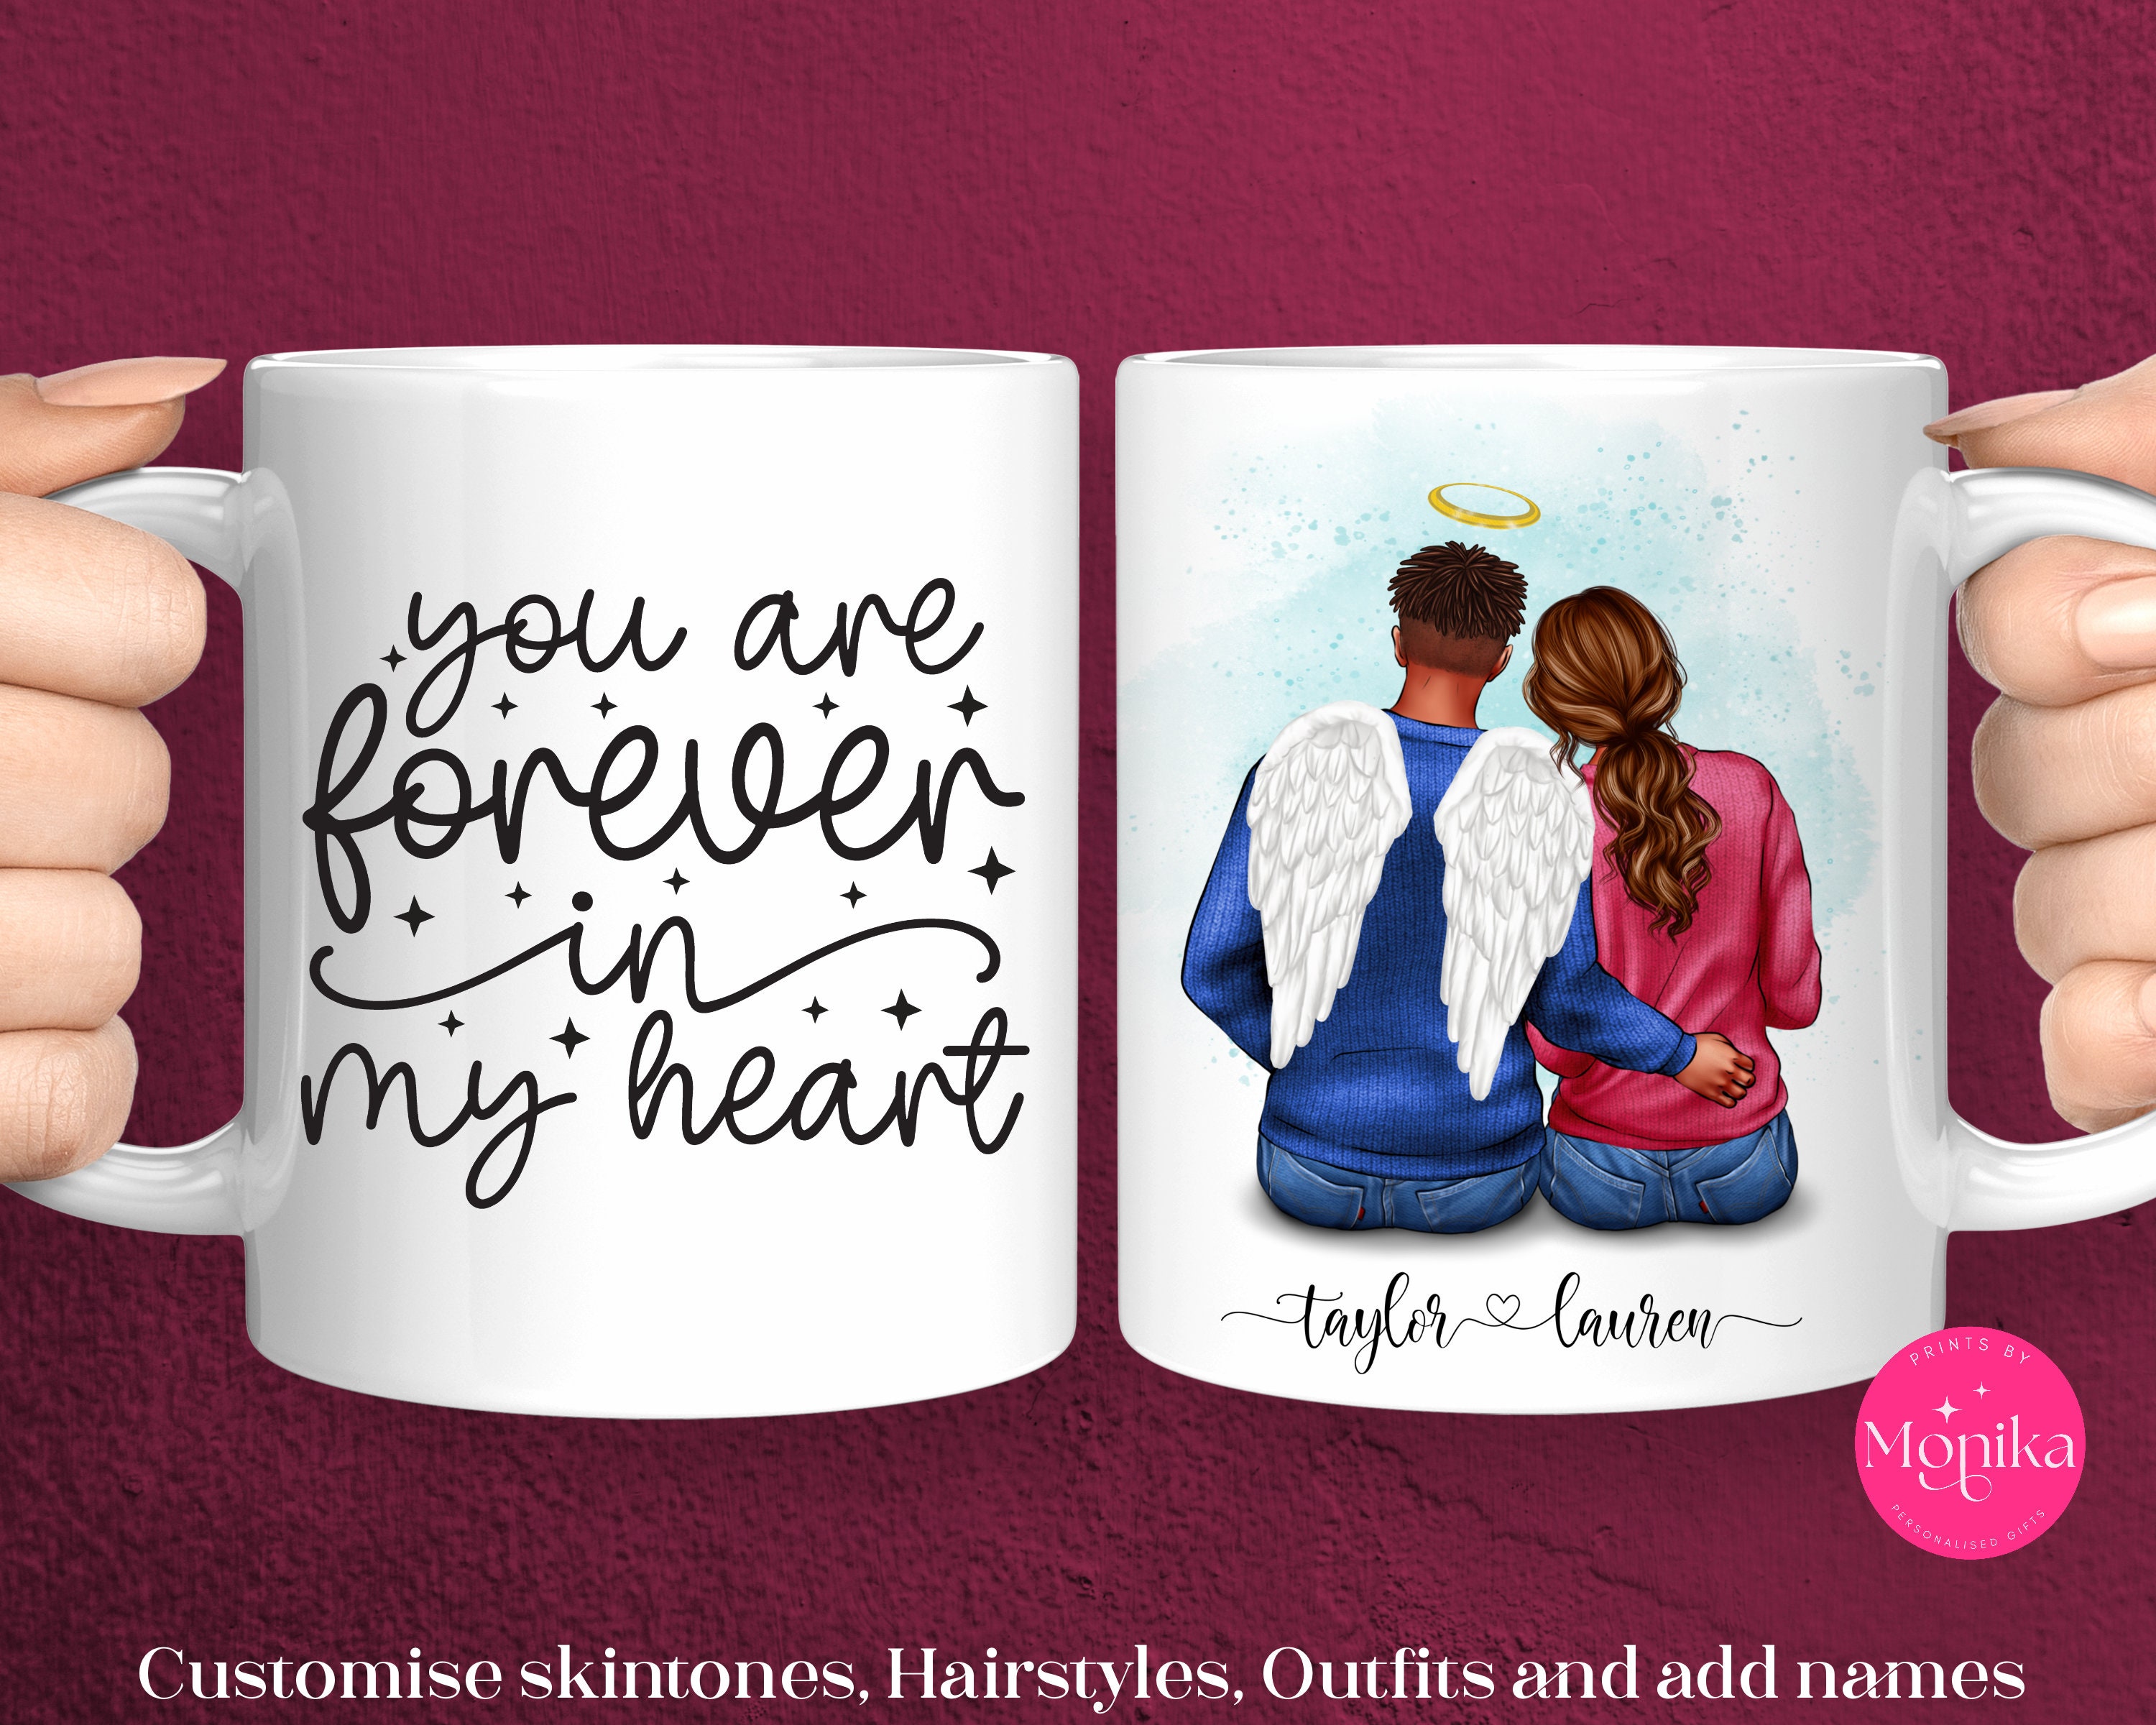 2 Mugs pour couple I Love You tasses cœur qui s'emboîtent - Totalcadeau